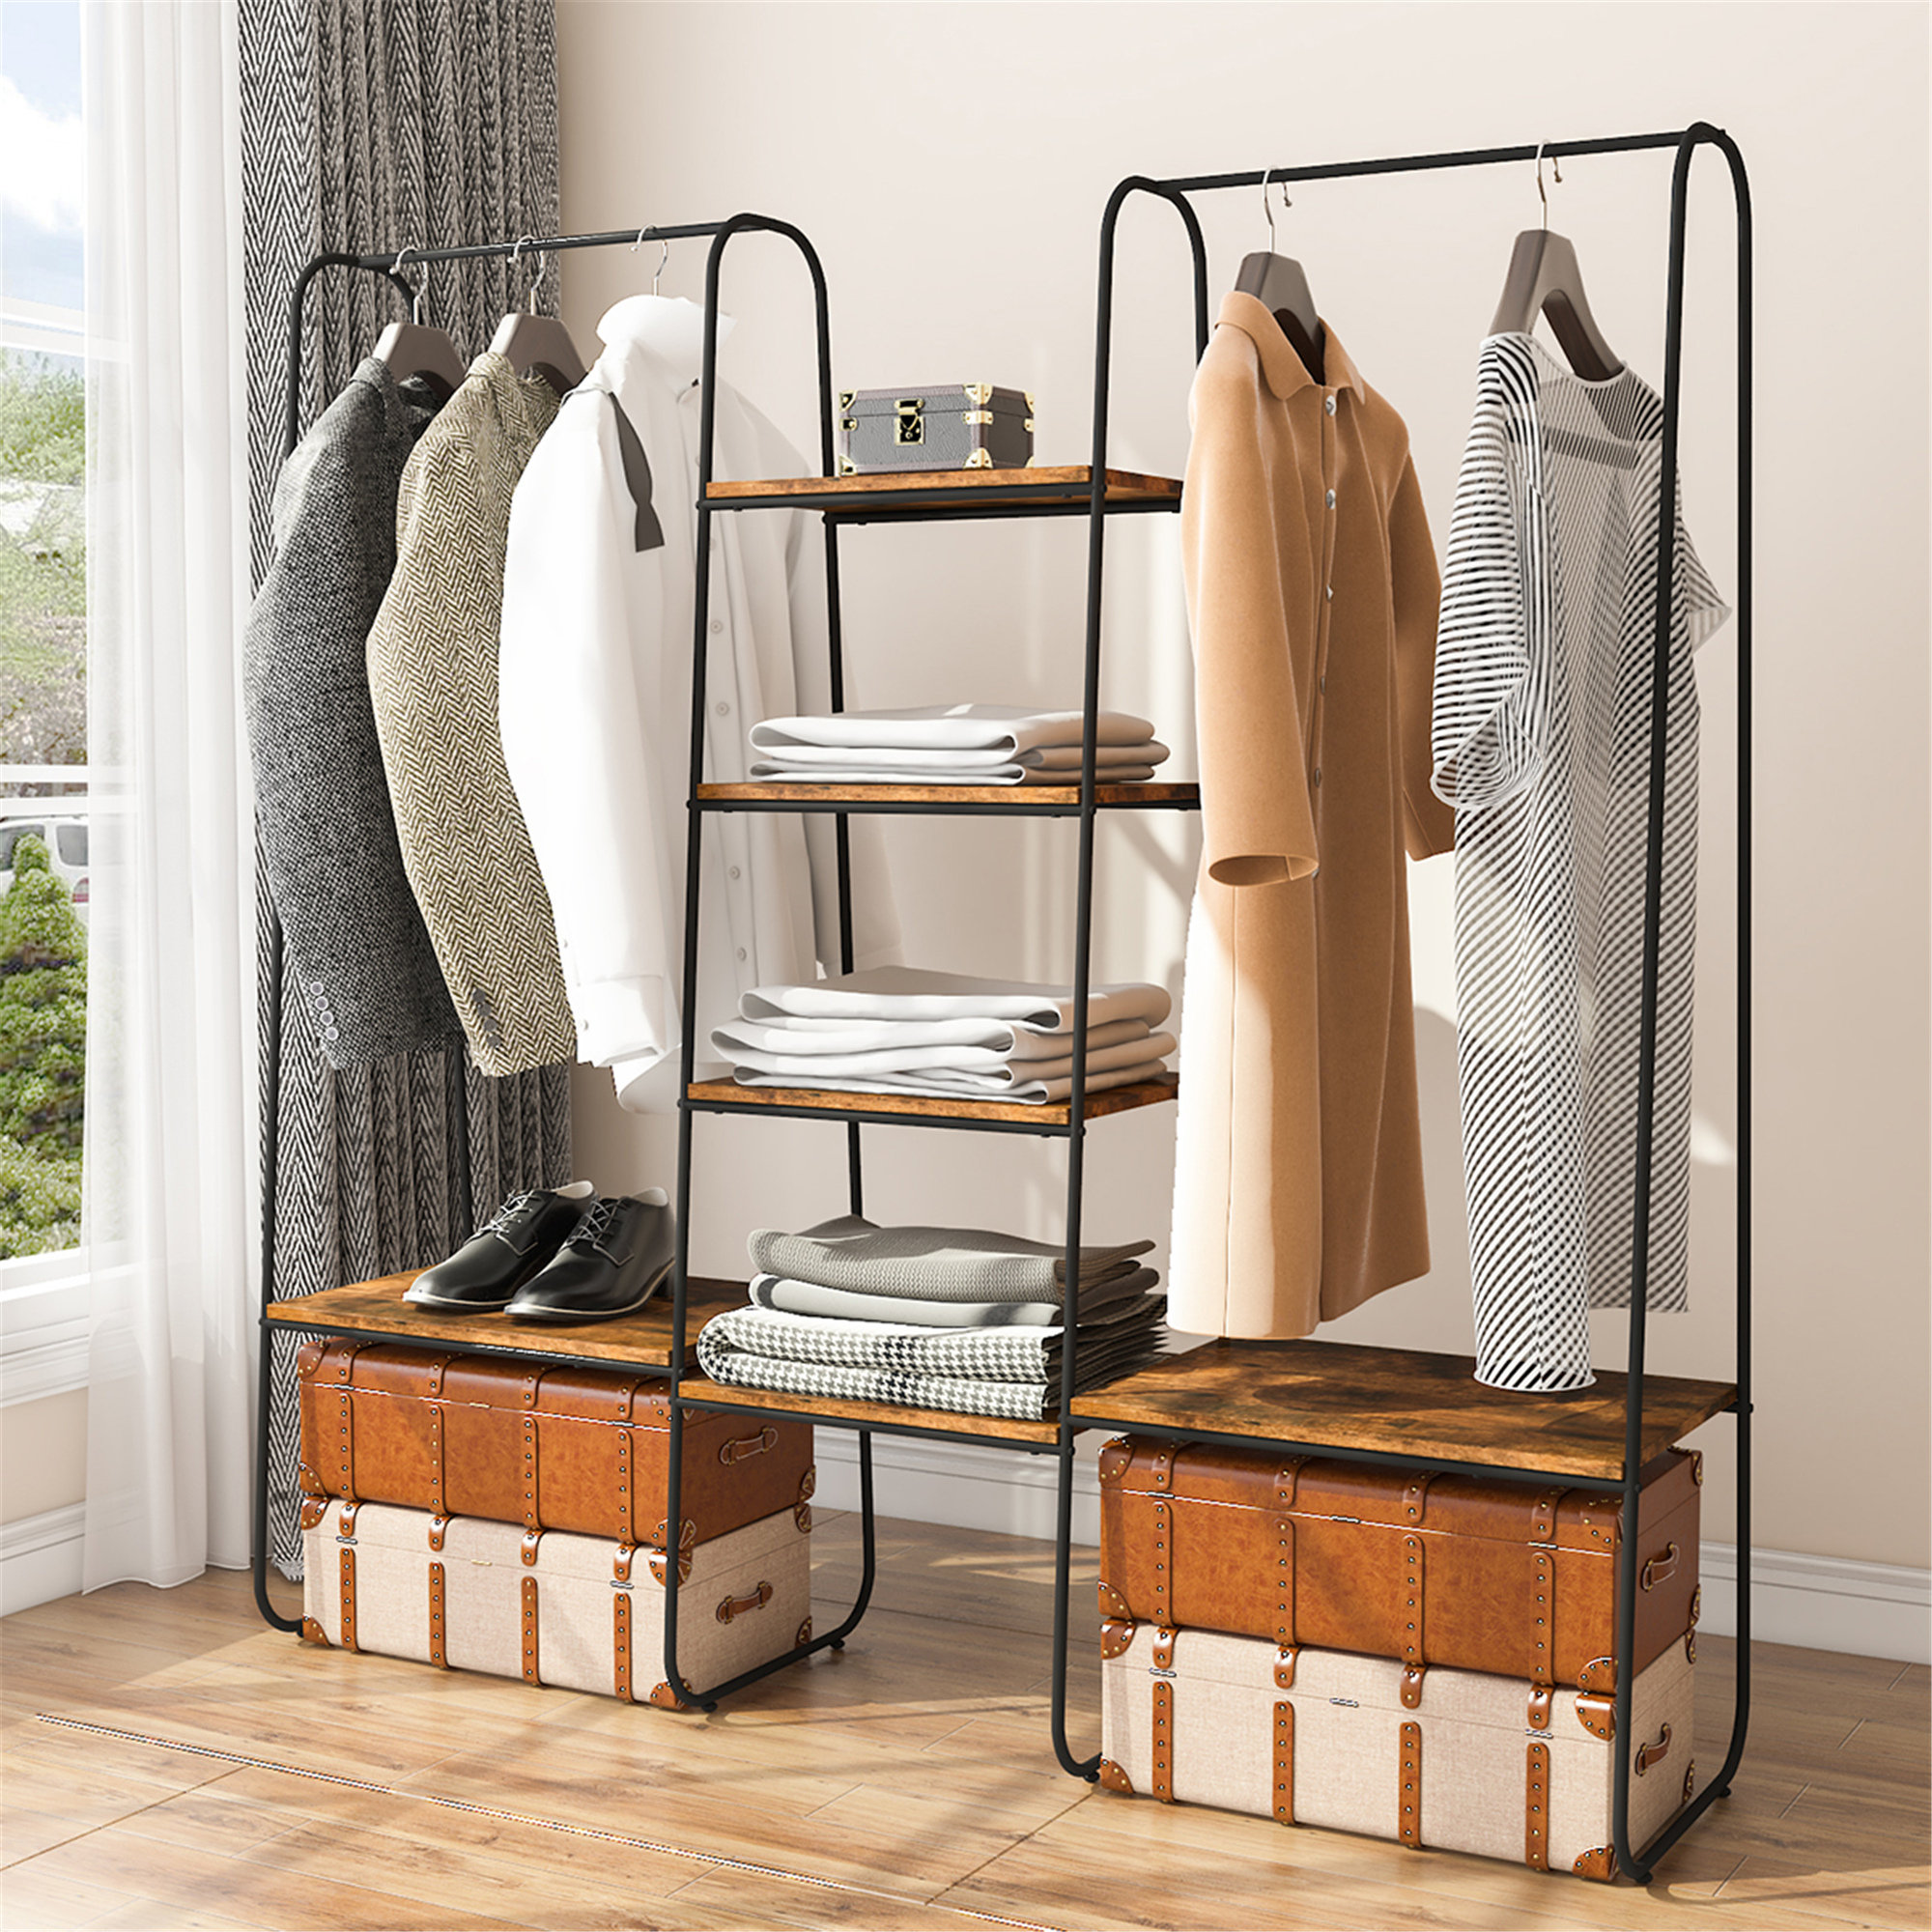 Clothes & Coat Hangers - Wayfair